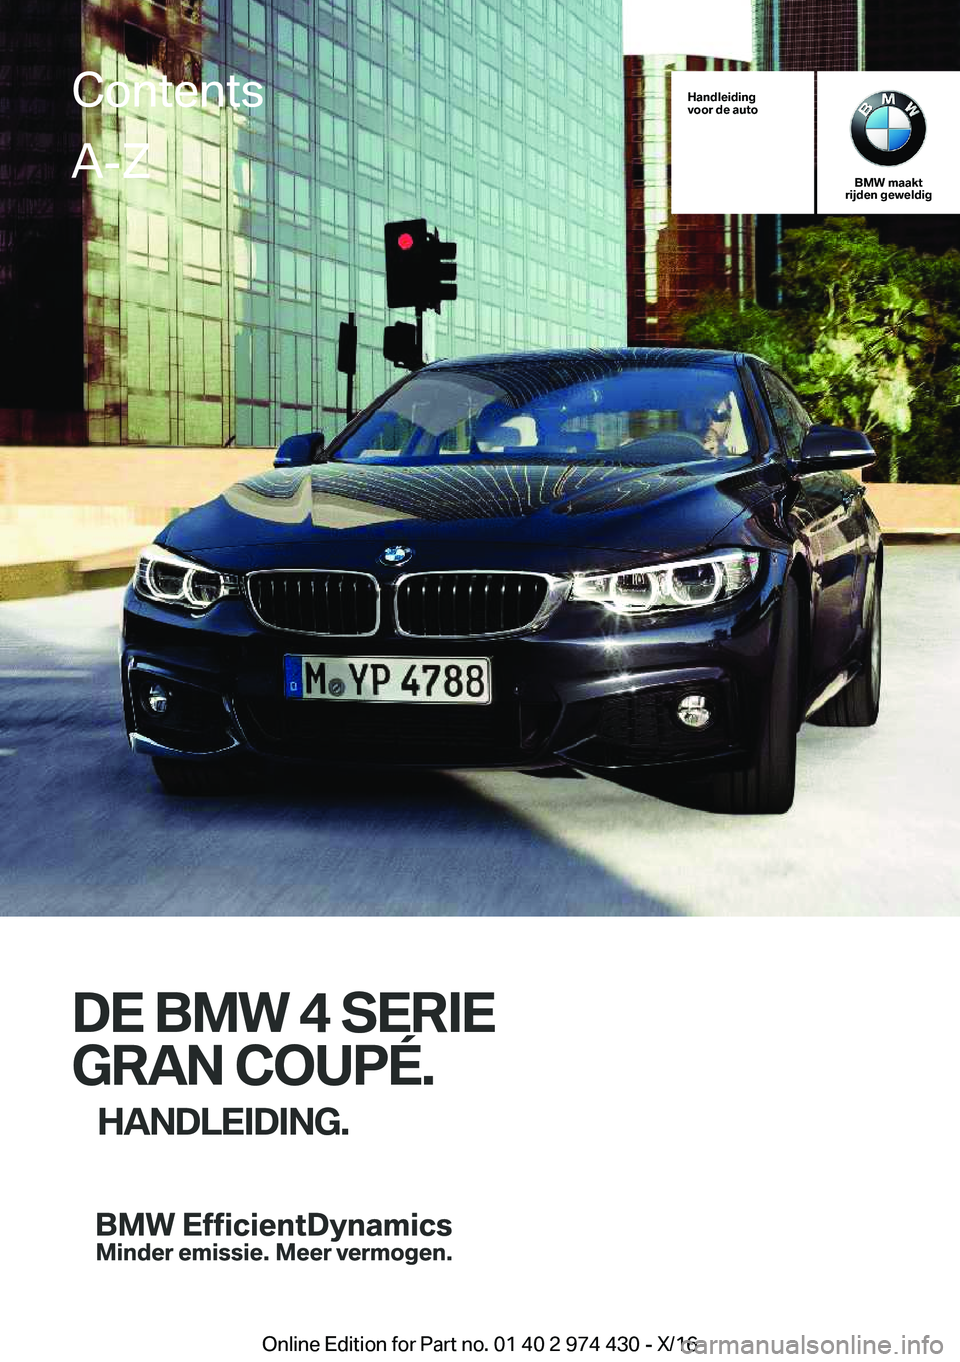 BMW 4 SERIES GRAN COUPE 2017  Instructieboekjes (in Dutch) �H�a�n�d�l�e�i�d�i�n�g
�v�o�o�r��d�e��a�u�t�o
�B�M�W��m�a�a�k�t
�r�i�j�d�e�n��g�e�w�e�l�d�i�g
�D�E��B�M�W��4��S�E�R�I�E
�G�R�A�N��C�O�U�P�